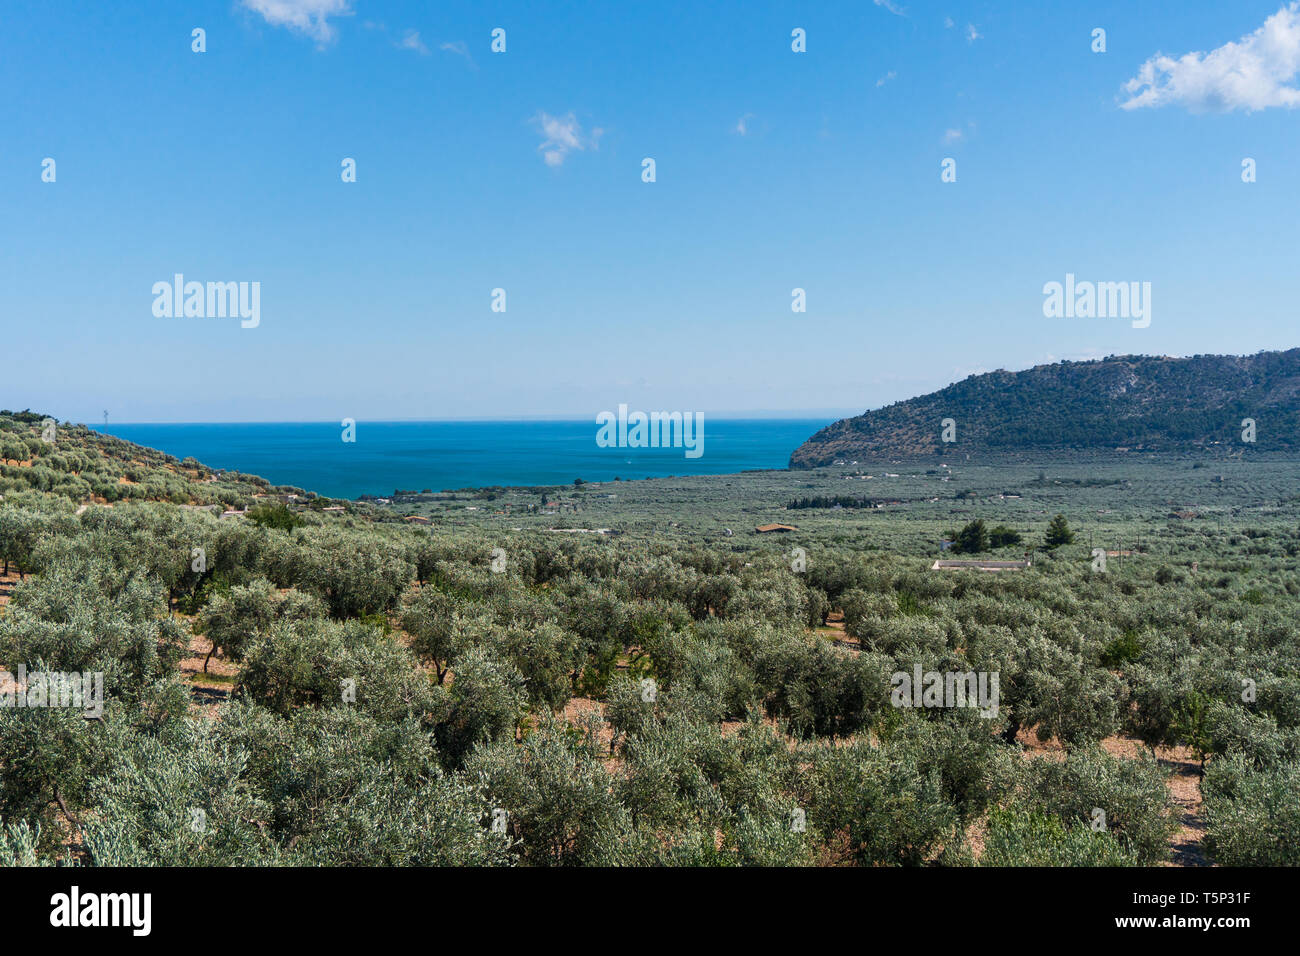 Ein Olivenhain mit einem wunderschönen blauen Meer am Horizont. Olivenhain im Tal. Die Berge in der Ferne sichtbar Stockfoto